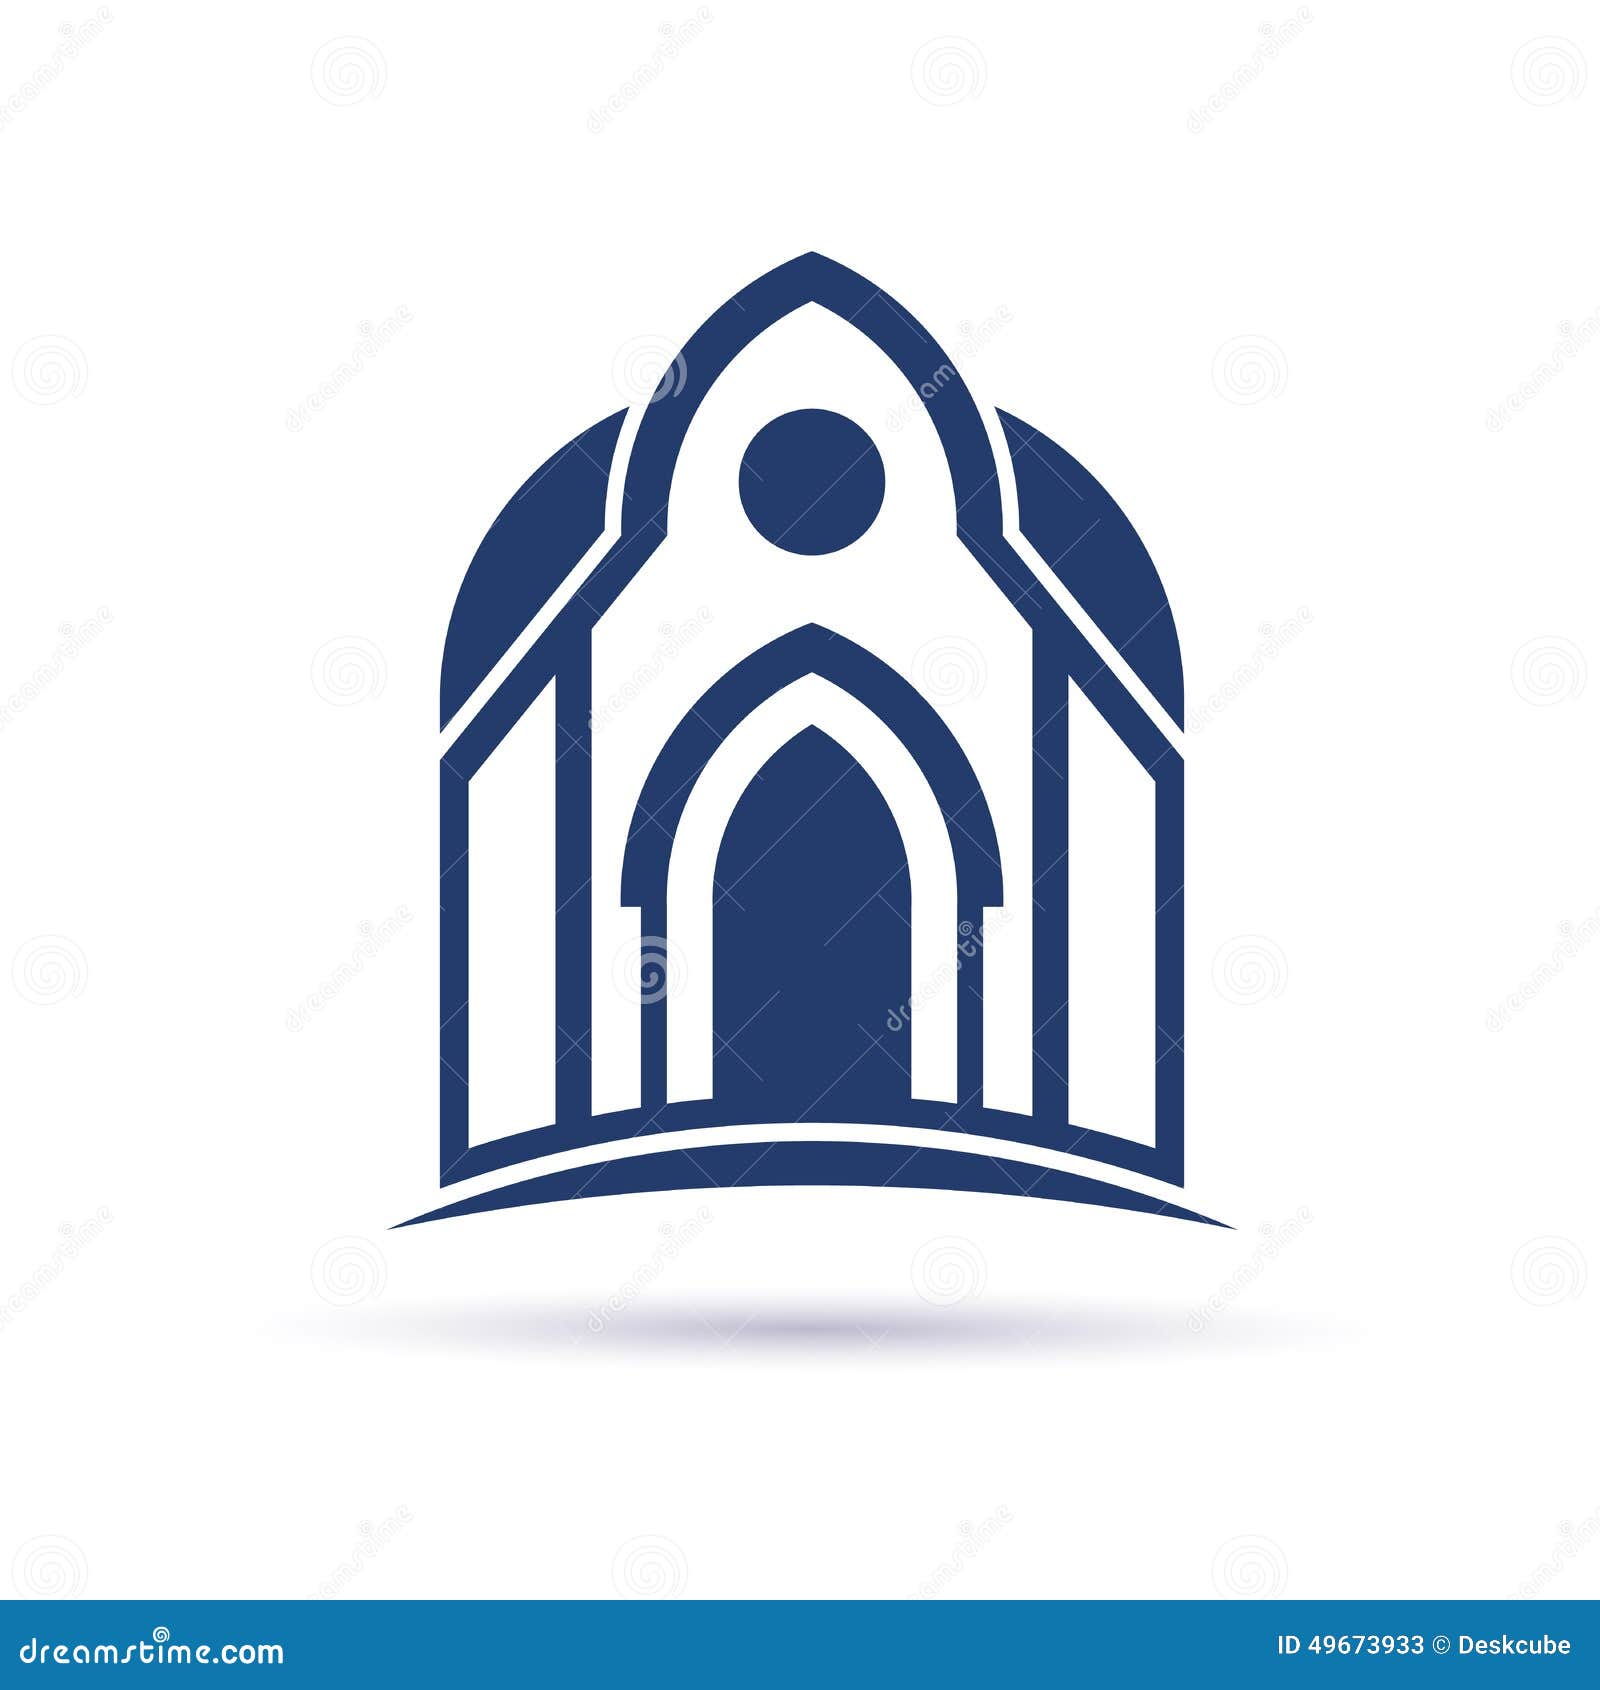 church cupula facade logo